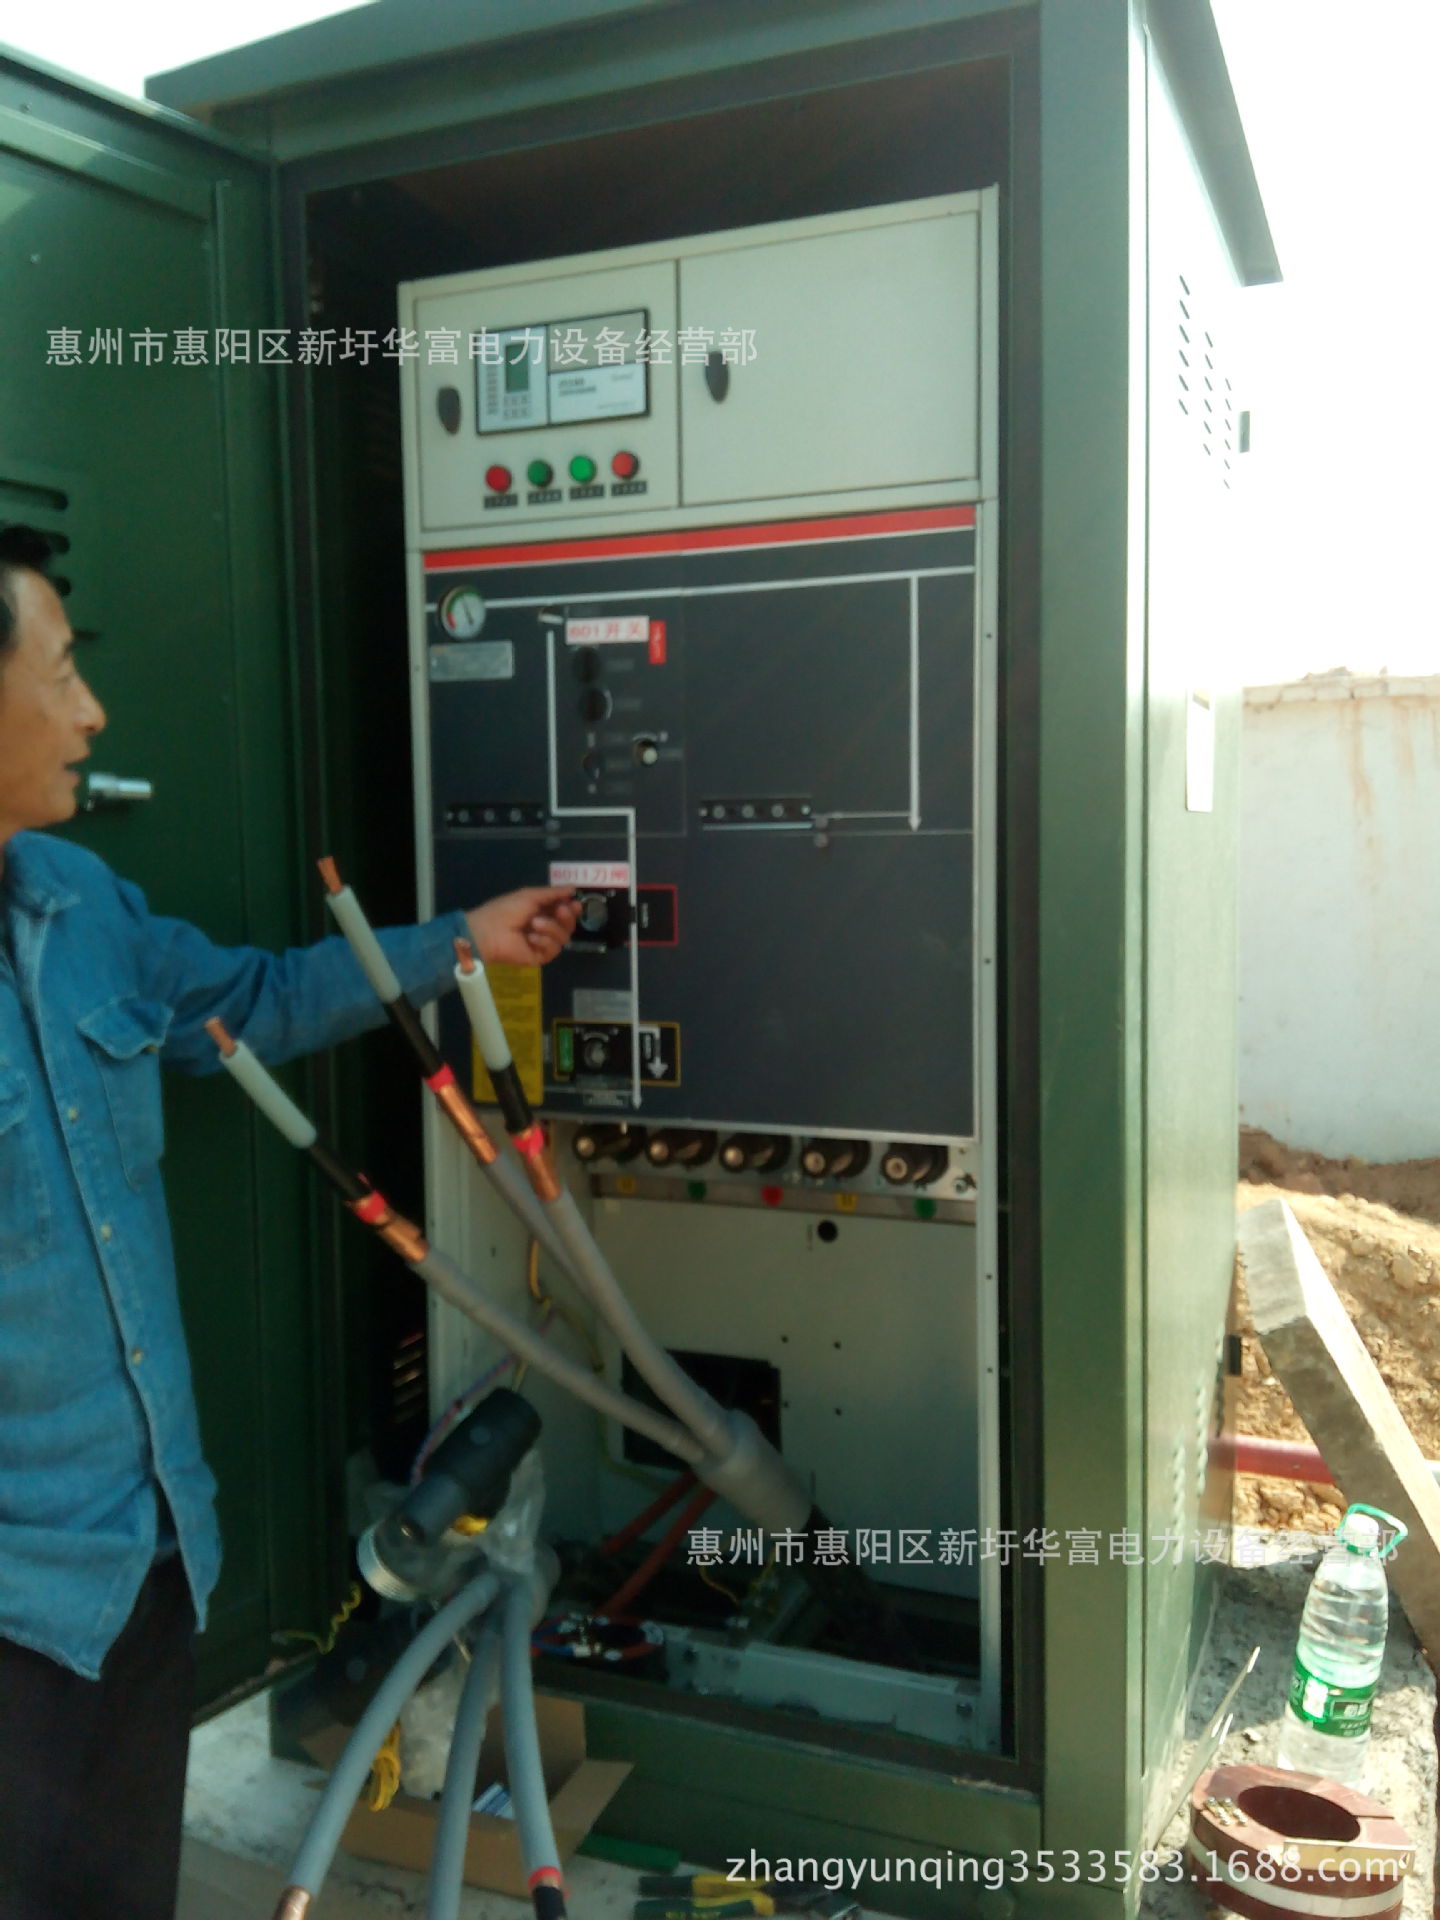 提供惠州市附近电力变压器,配电柜电力线路安装,维修,维护.图片_6